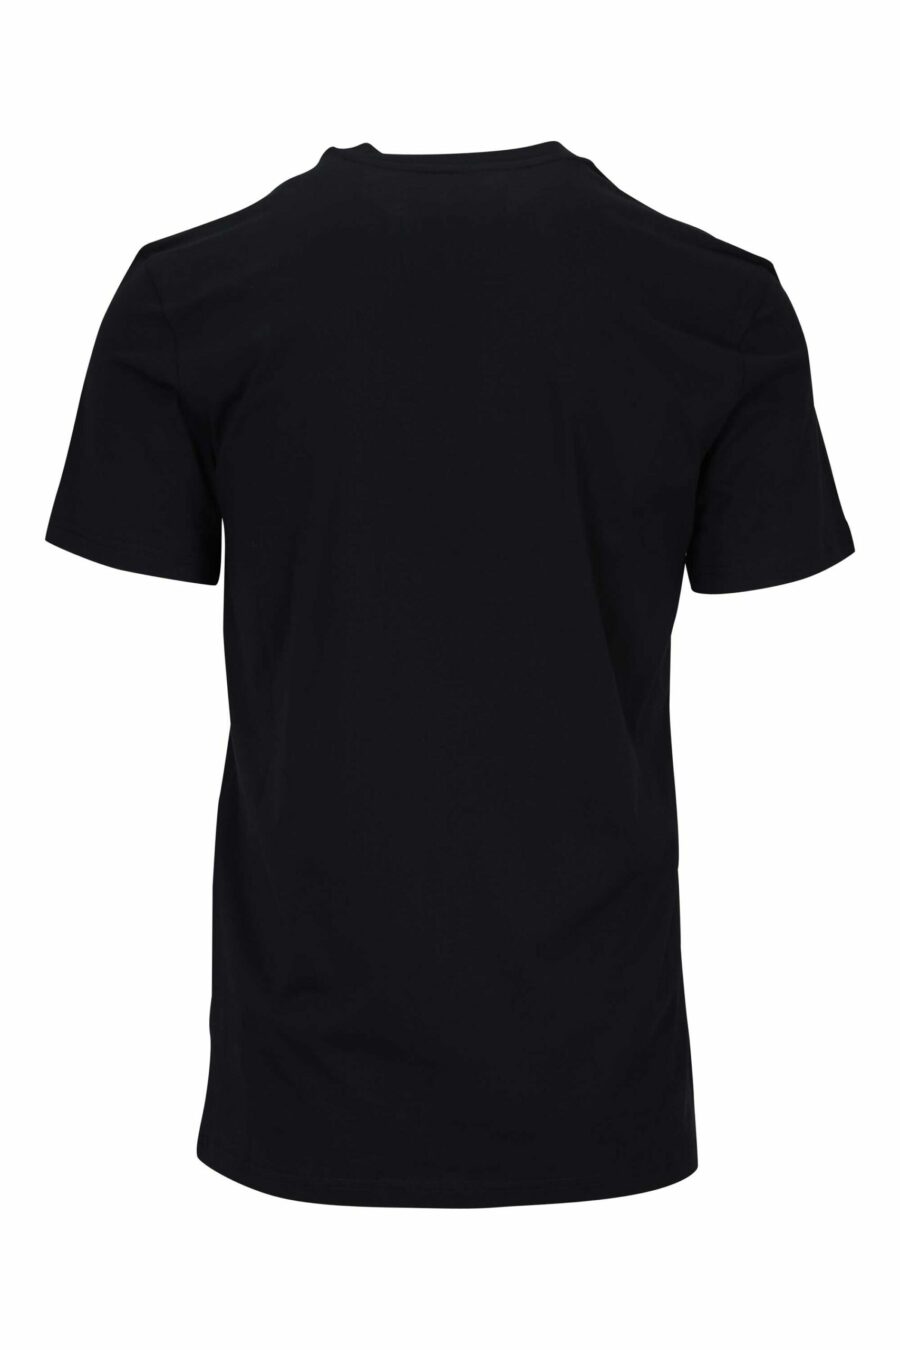 Camiseta negra con minilogo oso en puntos monocromático - 667113455969 1 scaled